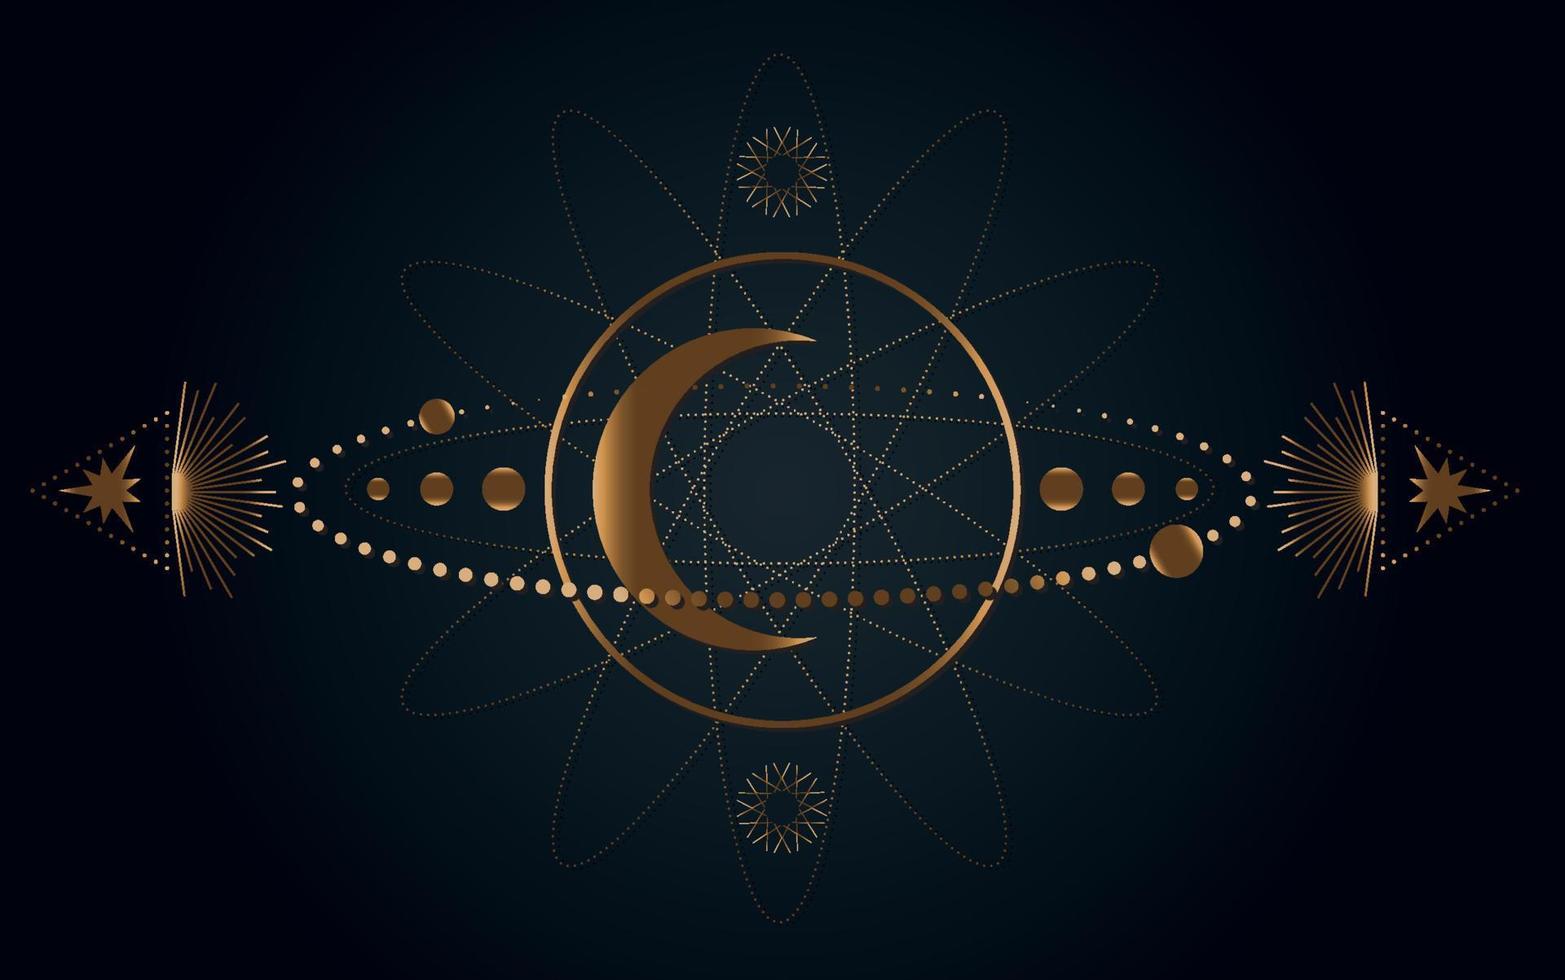 mystisk helig geometri. måne, stjärnor, banor. guld mån magi hednisk wicca gudinna symbol. alkemi, magi, esoterik, ockultism. vektor illustration isolerad på svart bakgrund